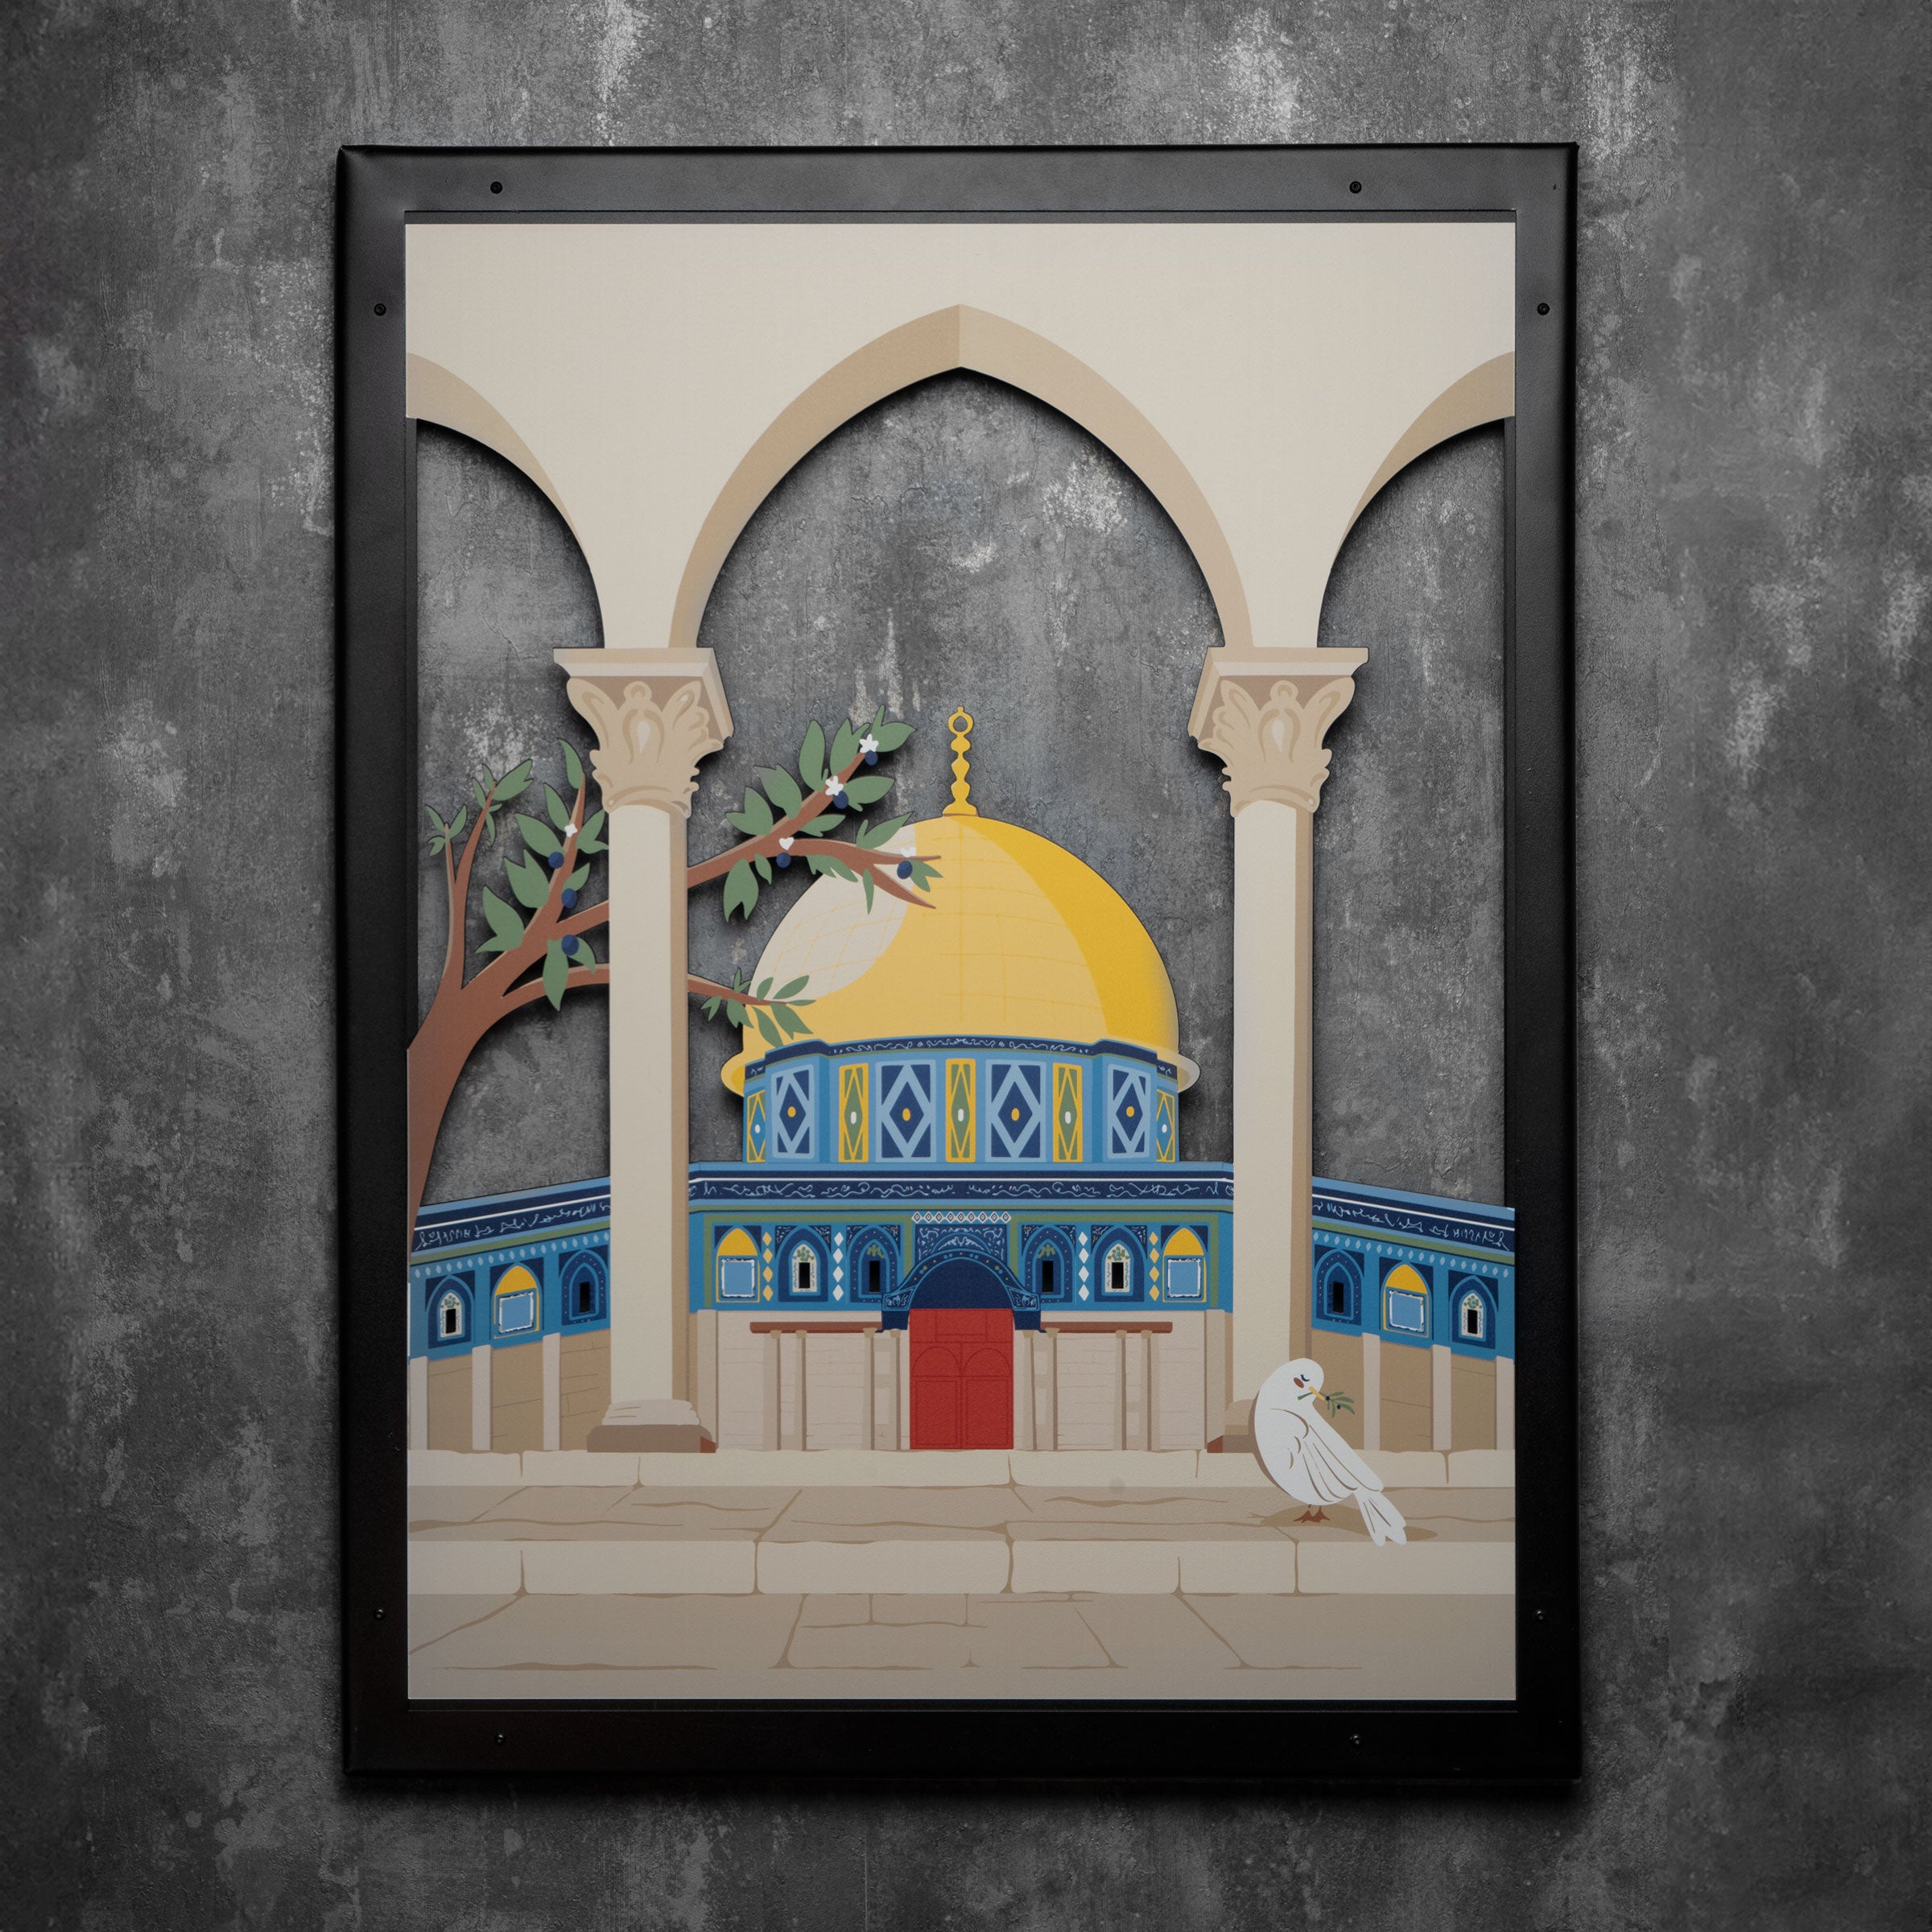 لوحة المسجد الاقصى من المعدن